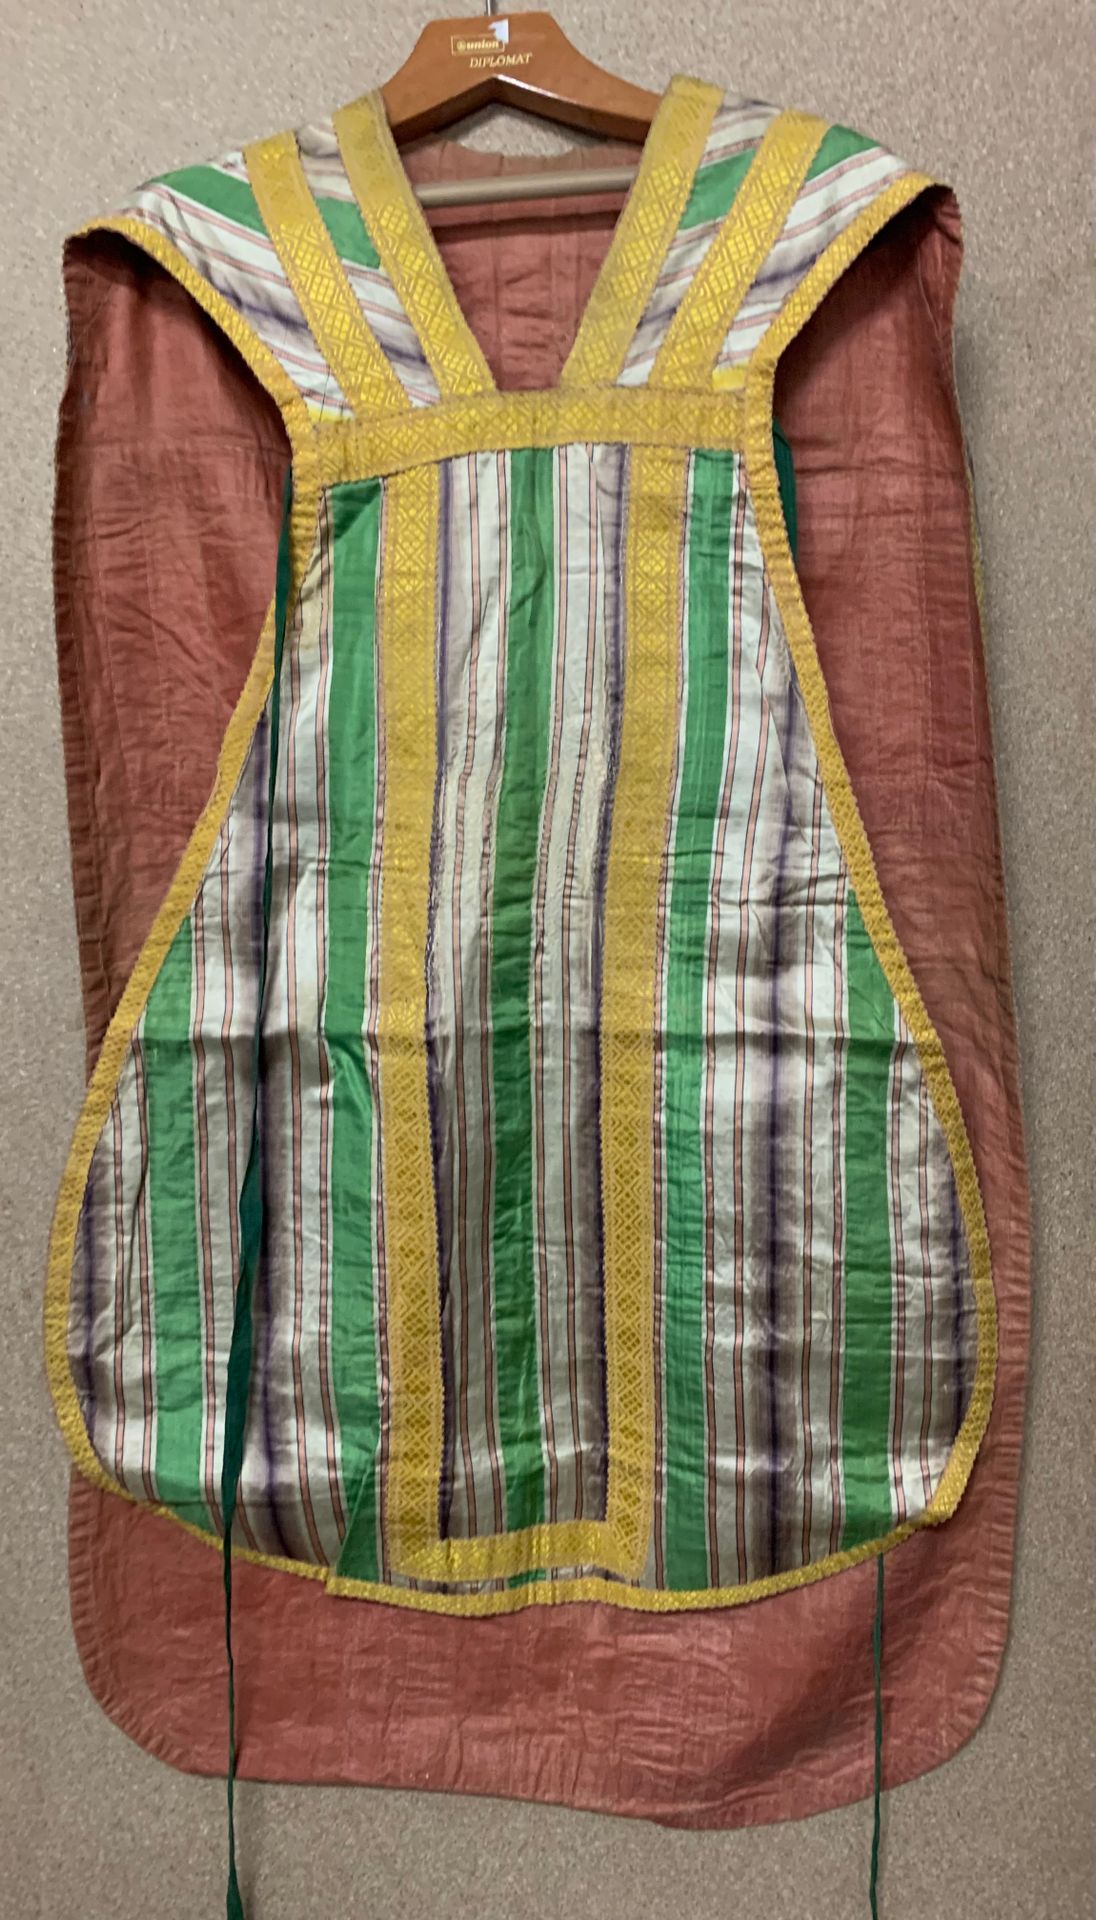 Null 来自戈尔德城堡私人小教堂的礼仪套装，18世纪末，由一件袍子、披肩和圣杯面纱组成。
绿色和白色的条纹缎子，金黄色的丝织品，赭色的桶状衬里（状况良好）。
&hellip;